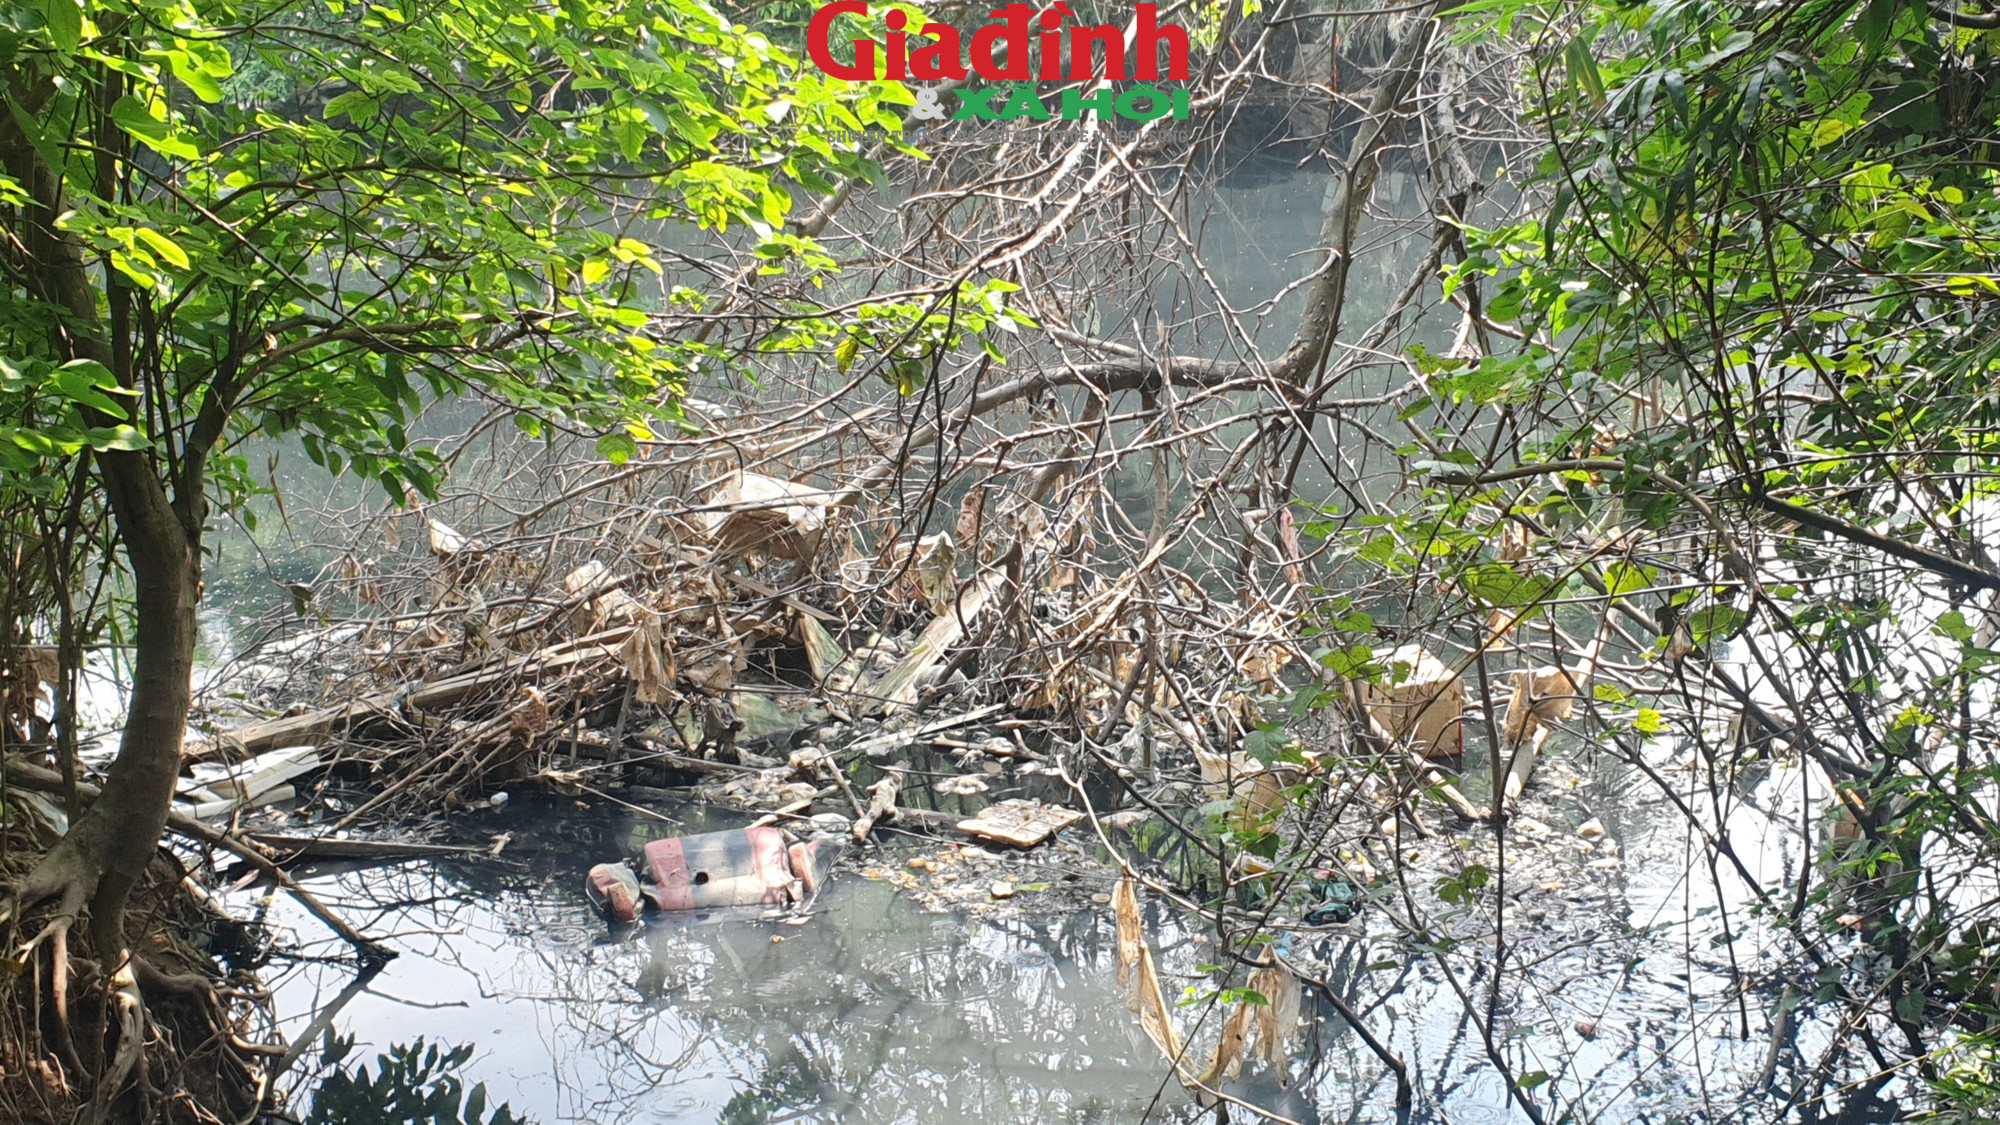 Hà Nội: Sông Nhuệ đang bị ô nhiễm trầm trọng, rác thải trôi nổi trên mặt nước  - Ảnh 8.